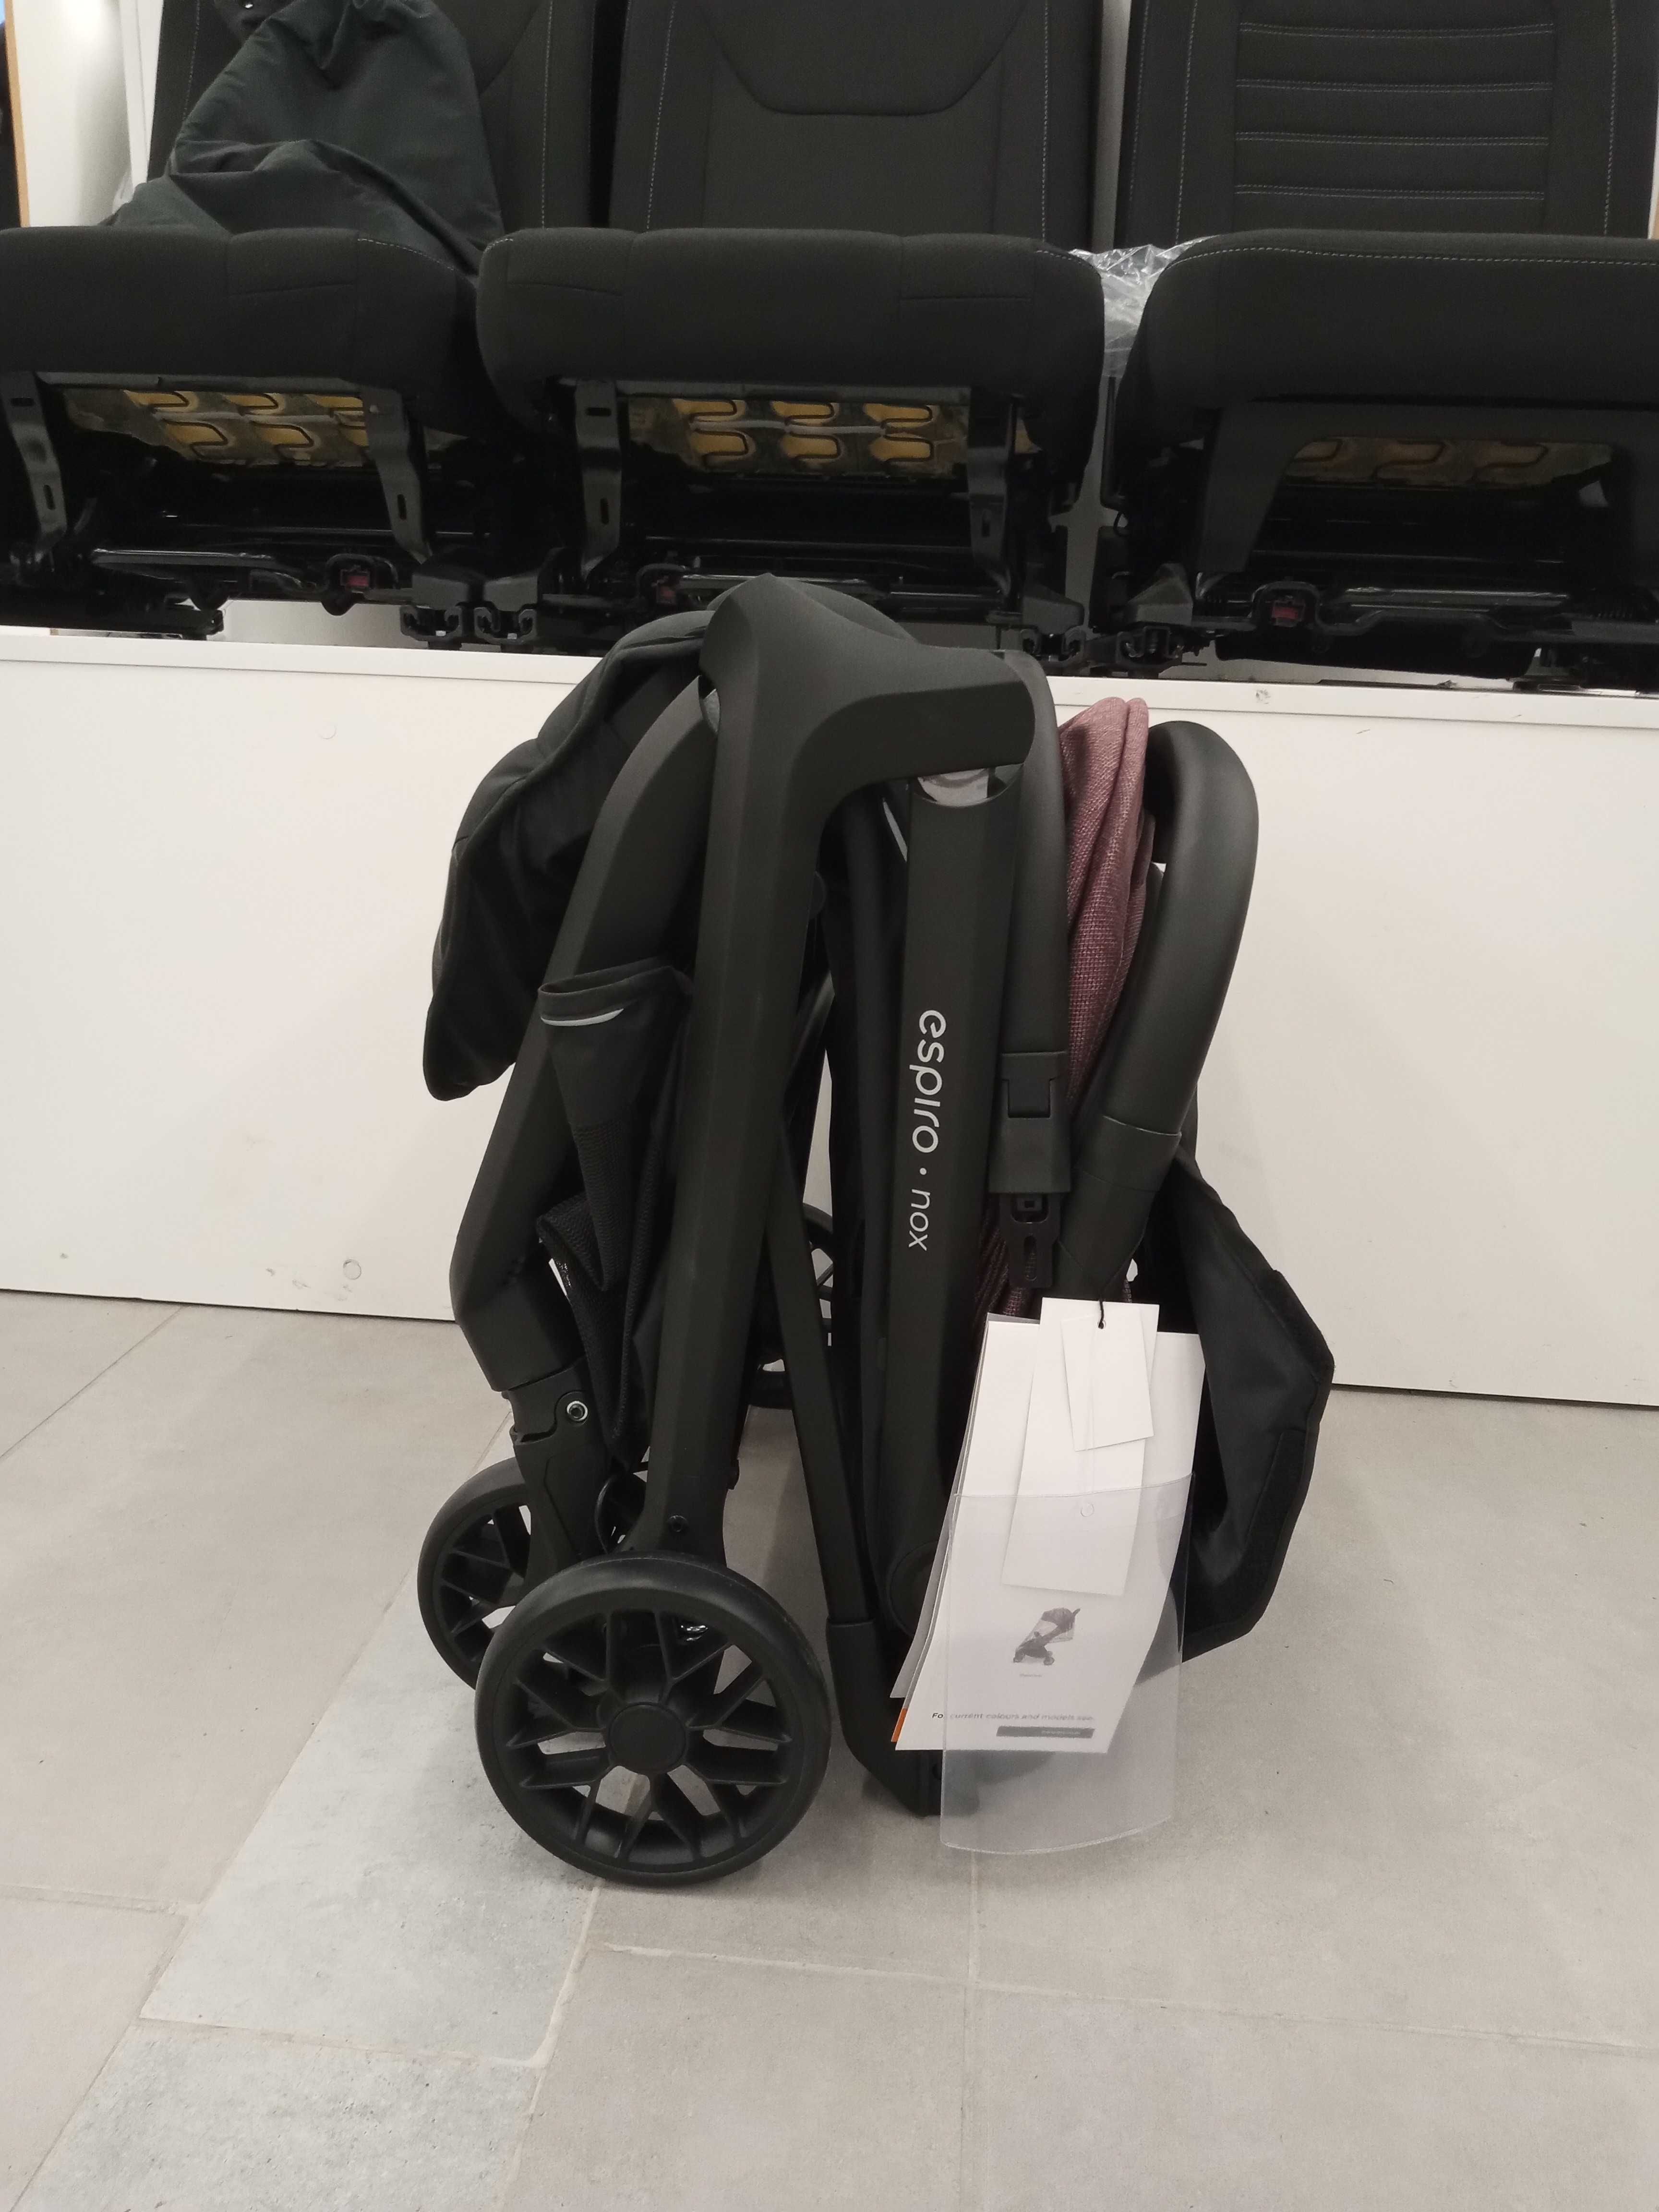 Espiro Nox kompaktowy nowy wózek spacerowy- z gwarancją i paragonem